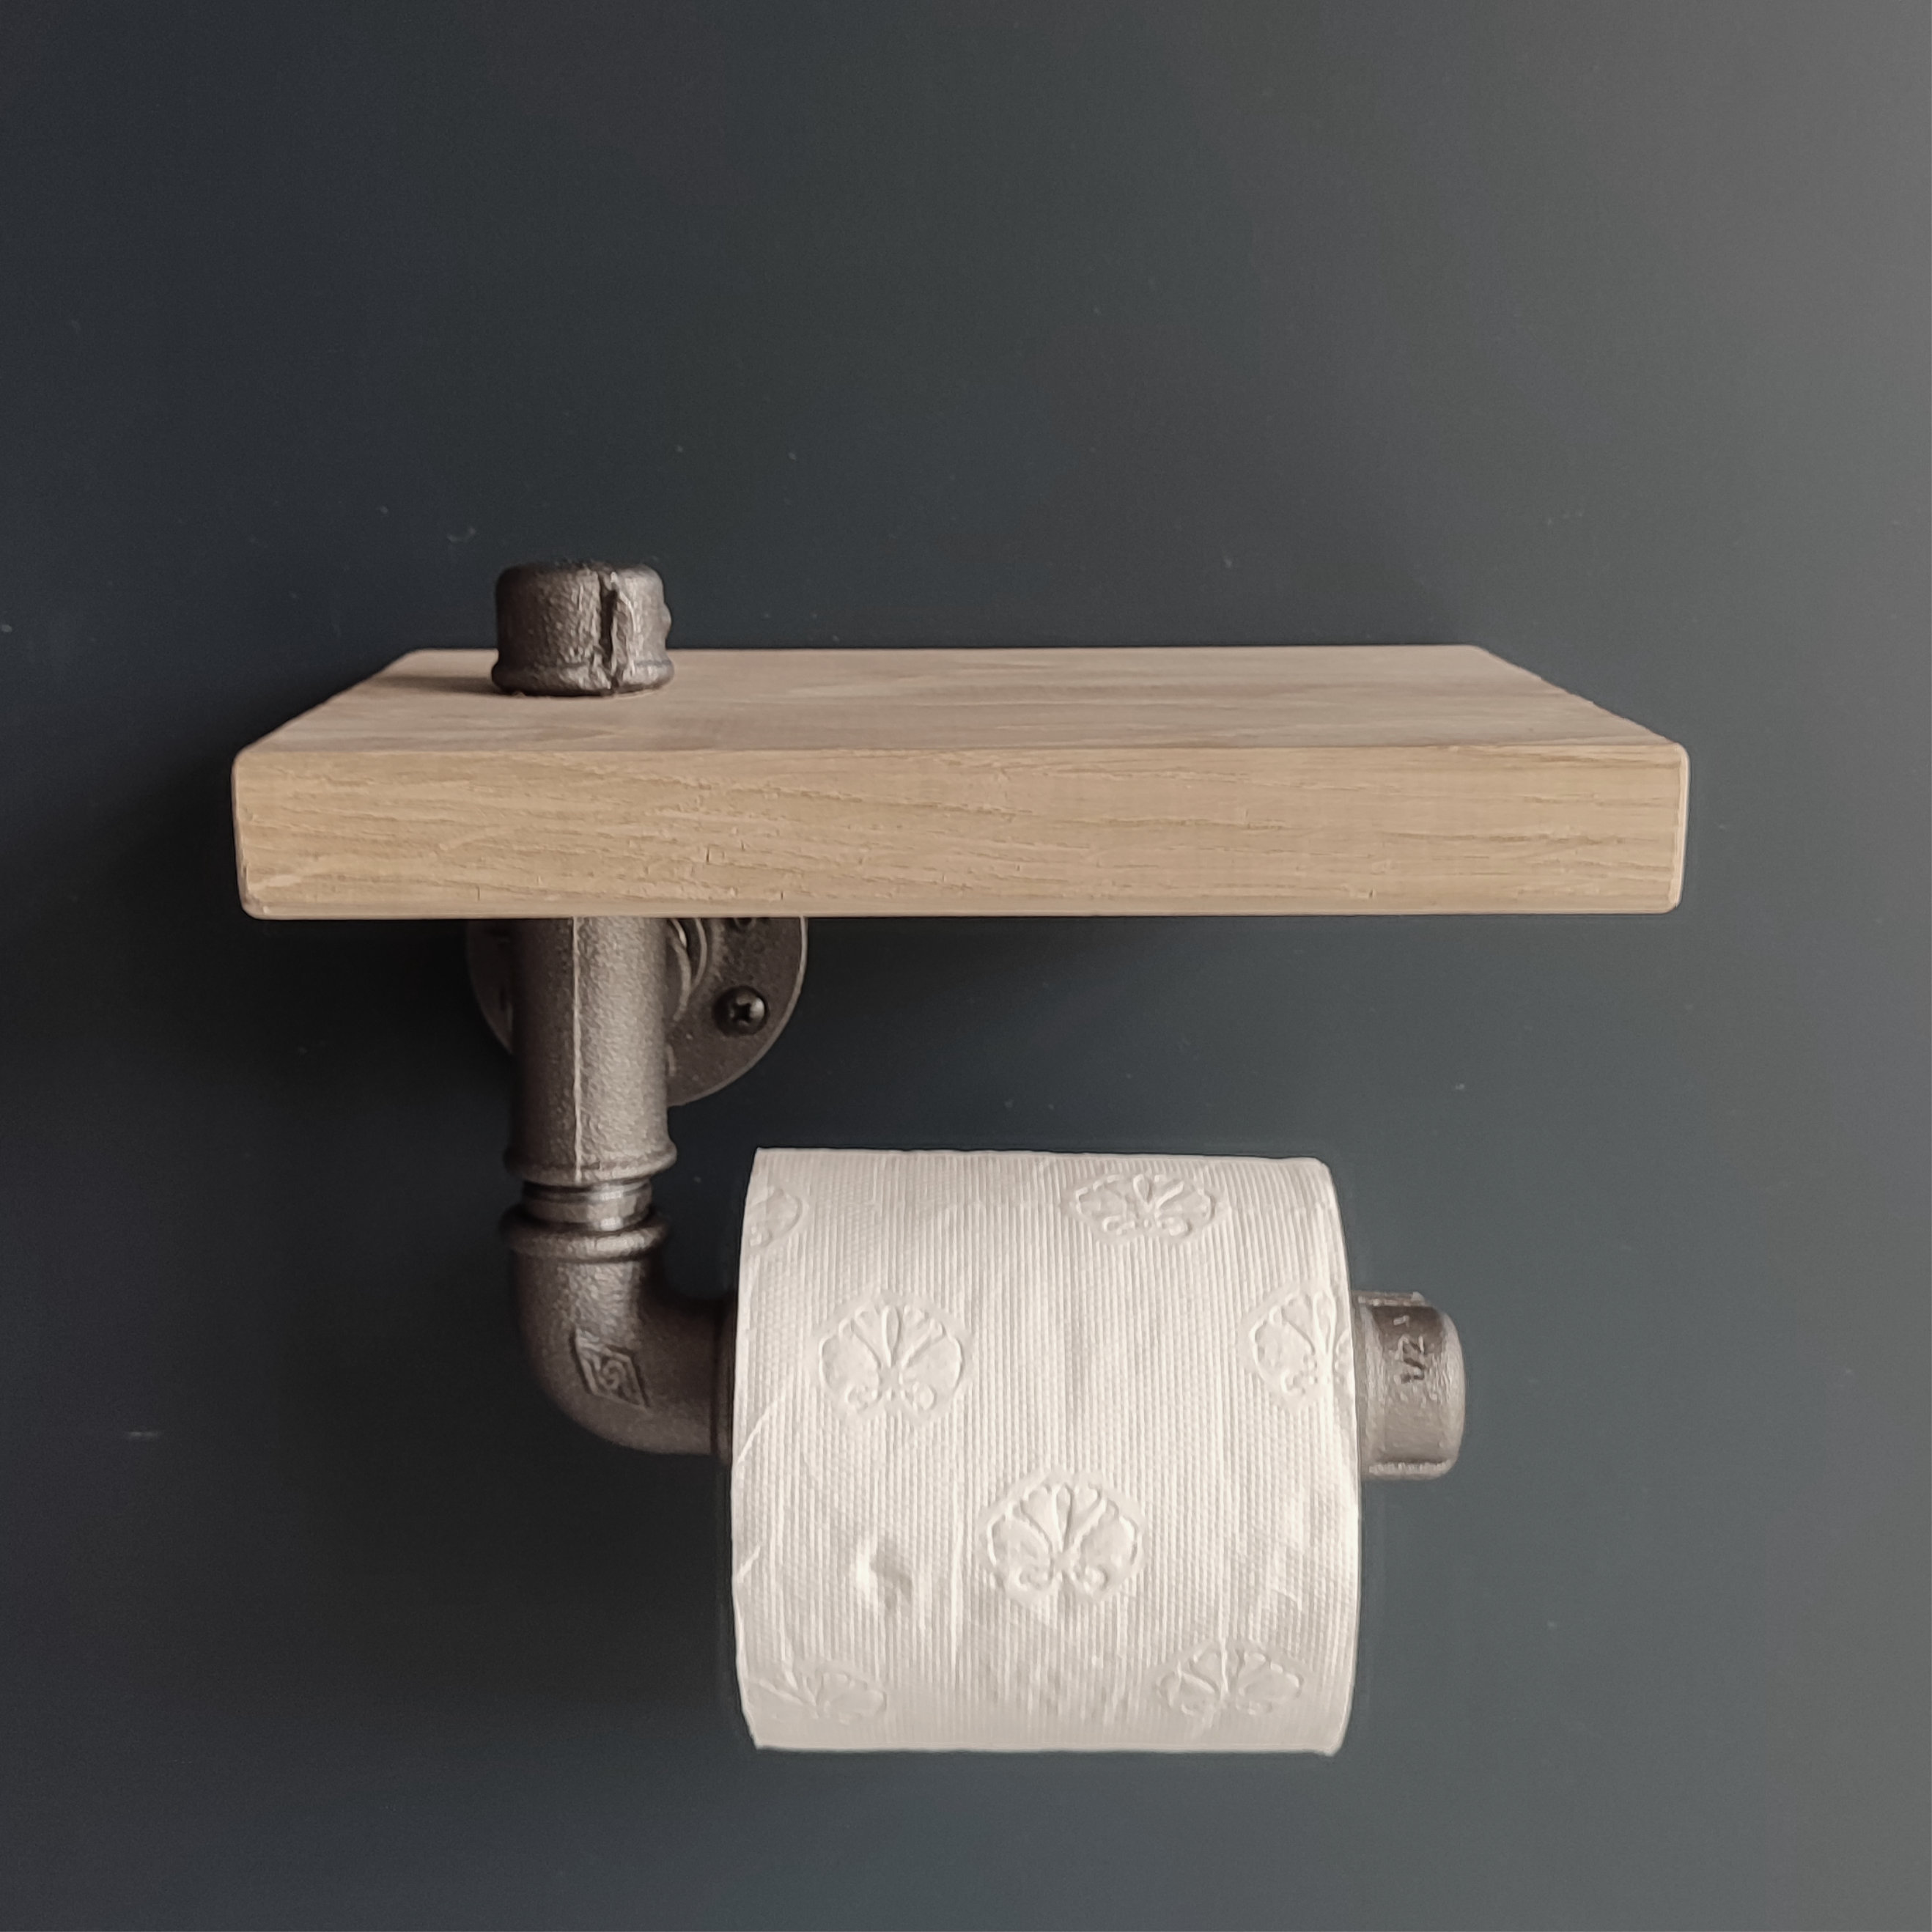 Porte rouleau wc - porte papier toilette acier - Team